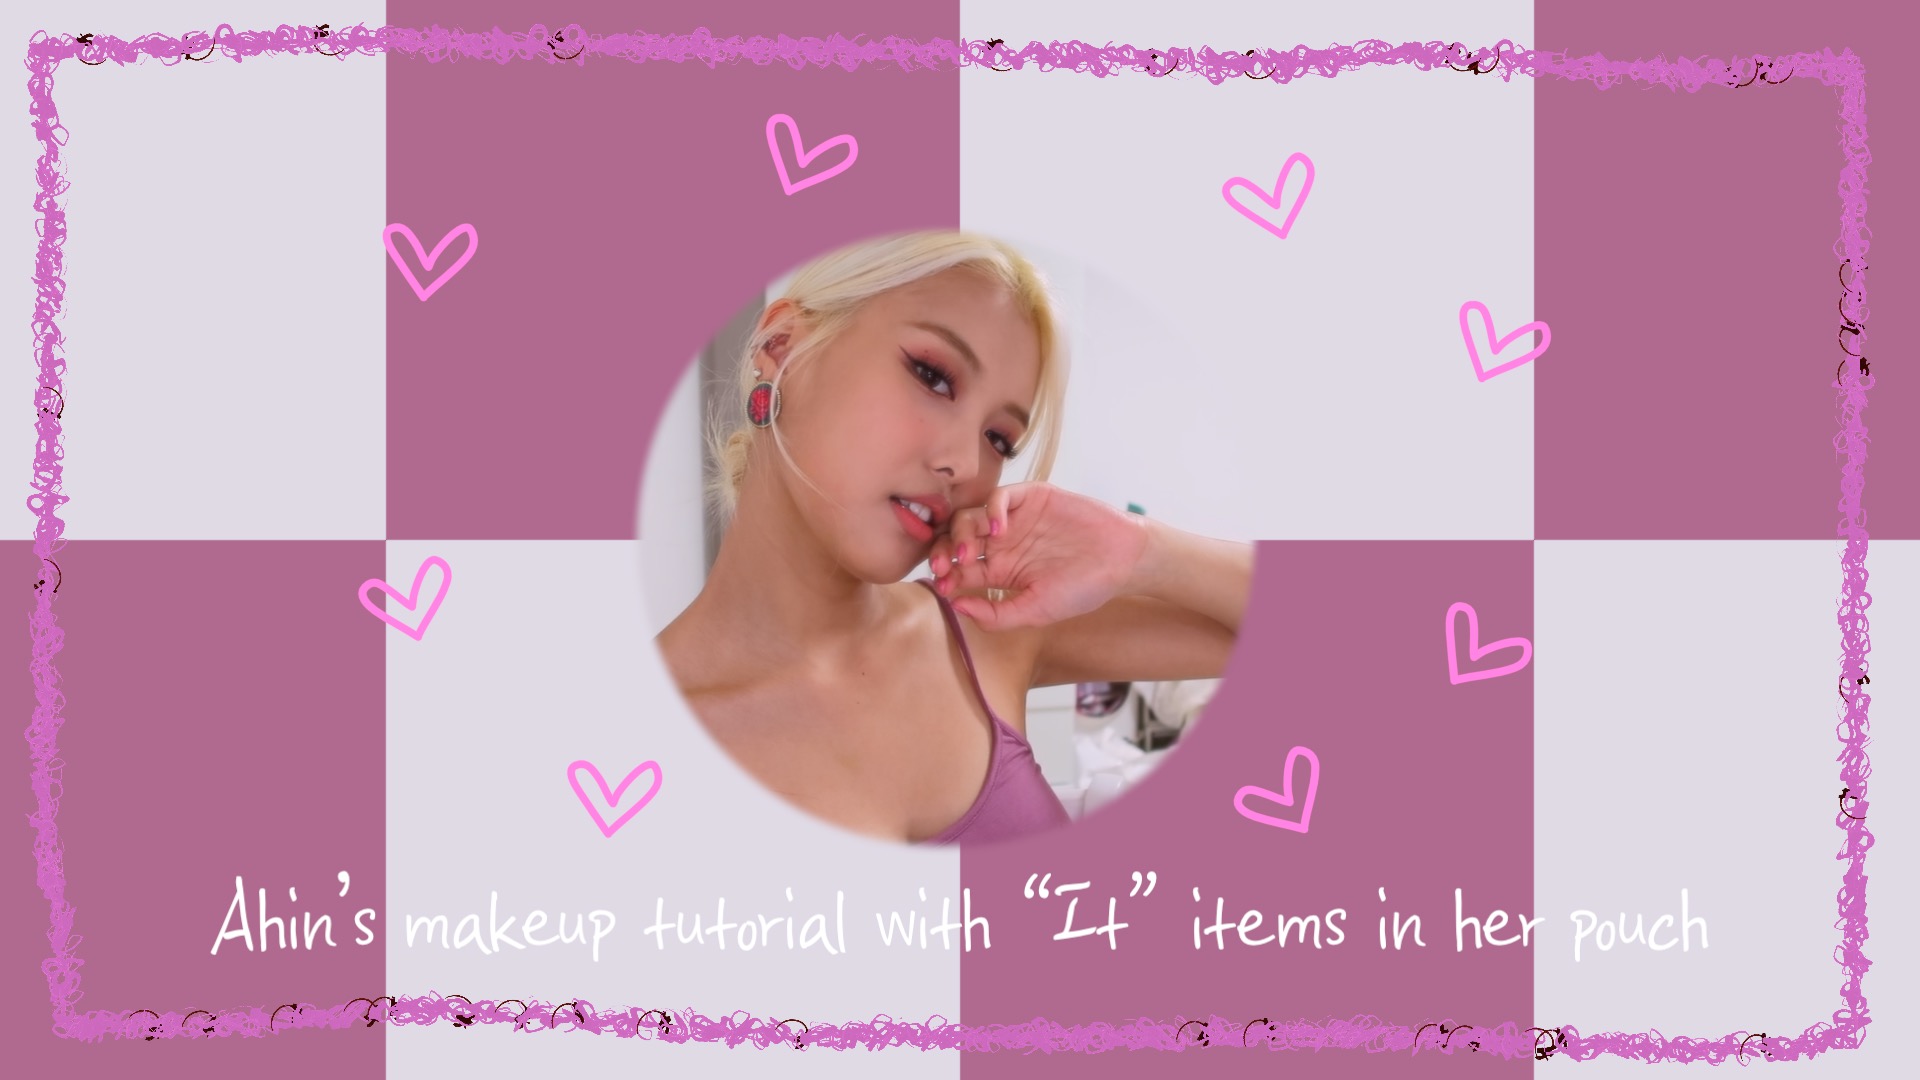 [아인랜드🎬] EP9.아인이의 잇템 뷰티 메이크업!💄/ Ahin’s makeup tutorial with “It” items in her pouch 🌟